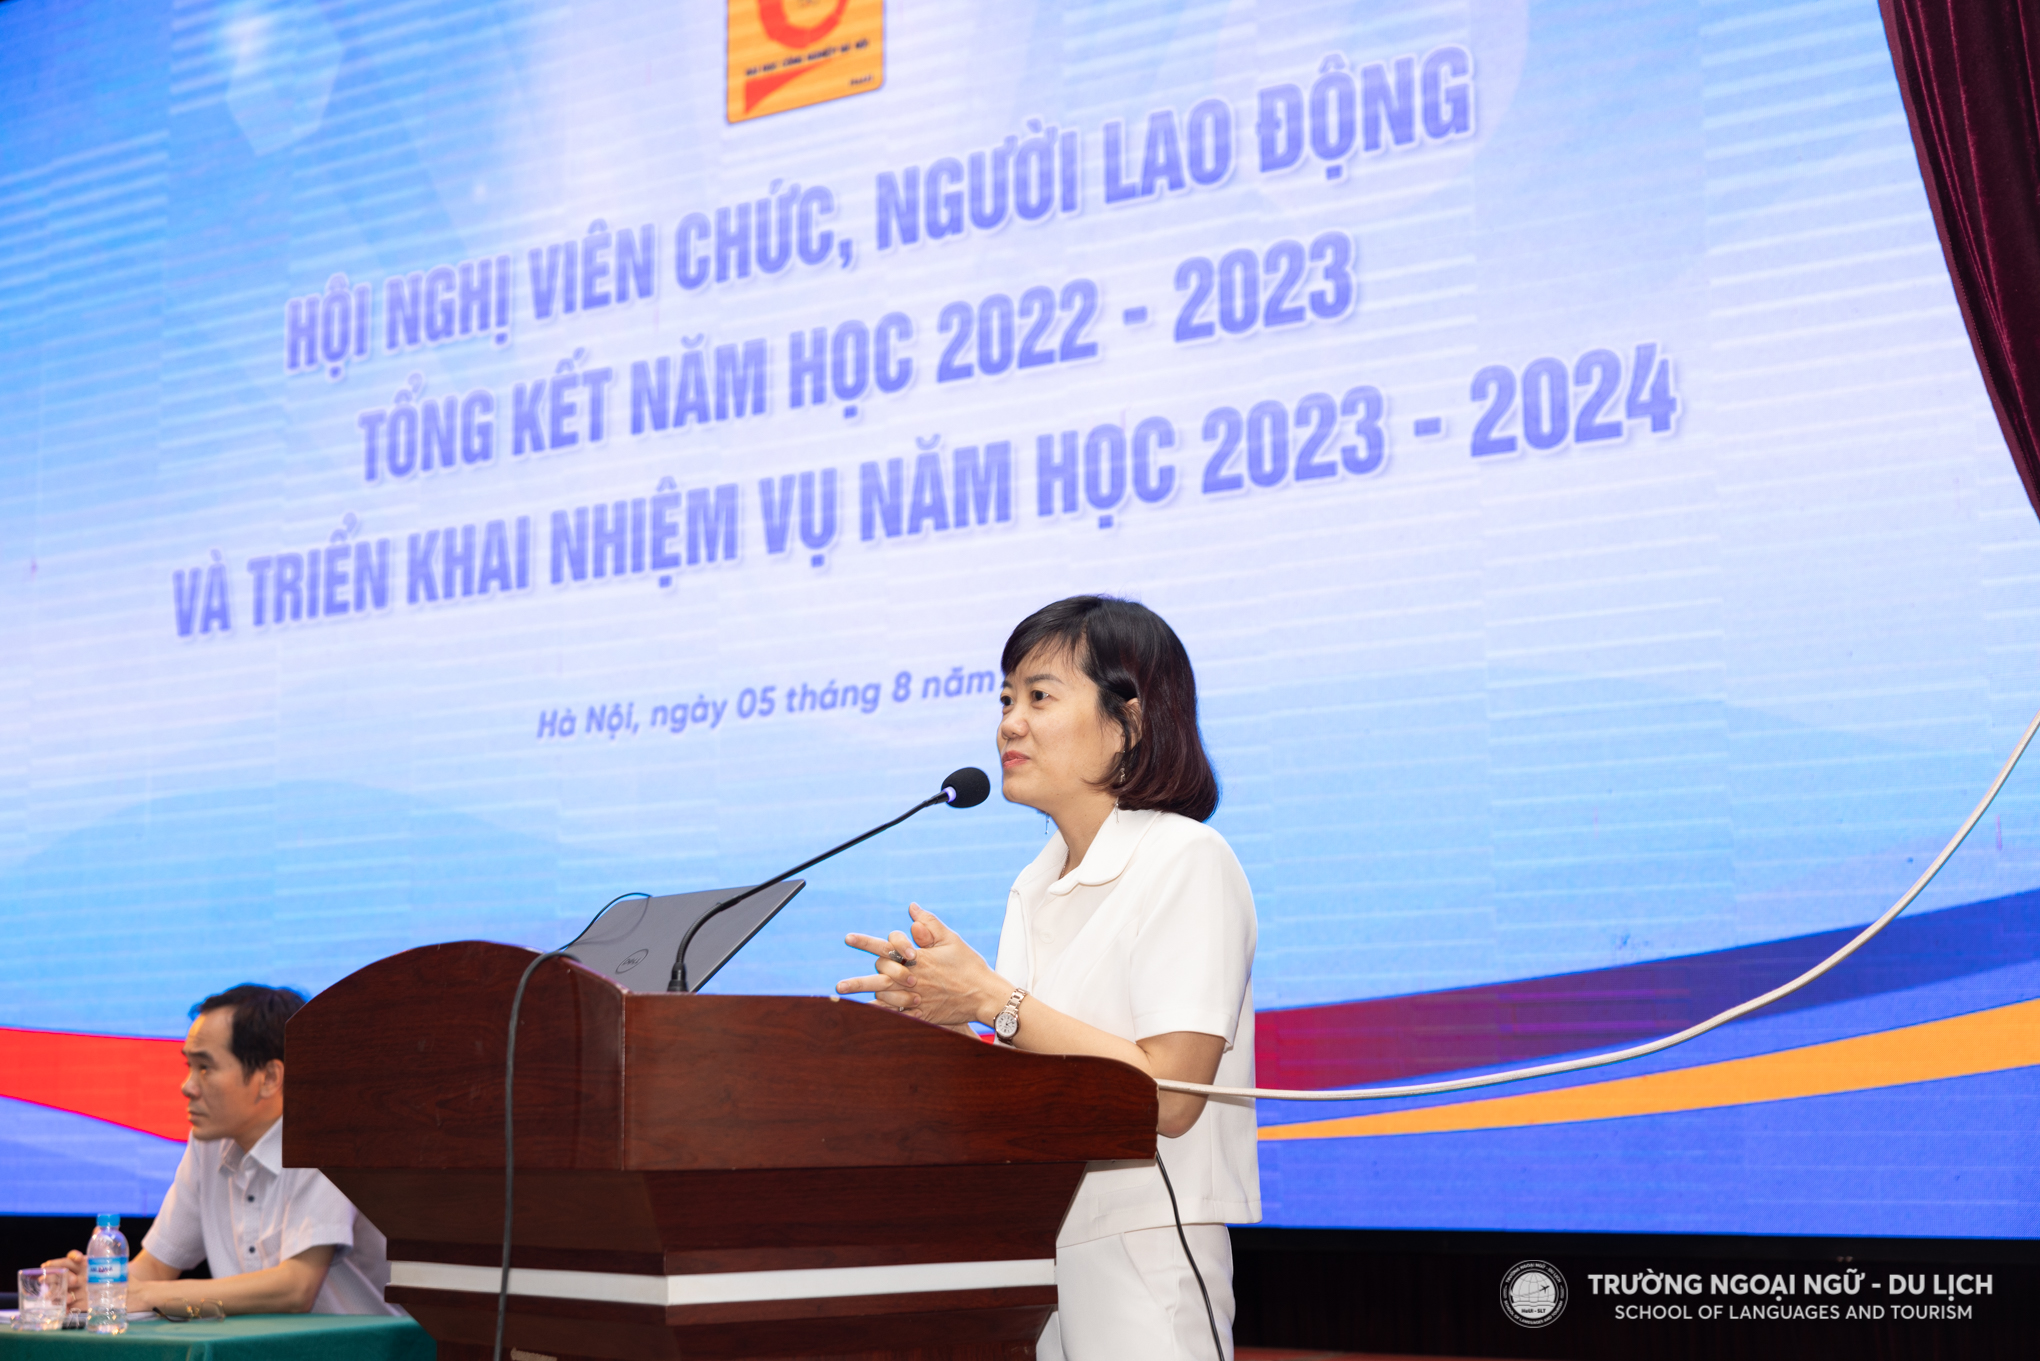 Hội nghị viên chức, người lao động, tổng kết năm học 2022 - 2023 và triển khai nhiệm vụ năm học 2023 – 2024